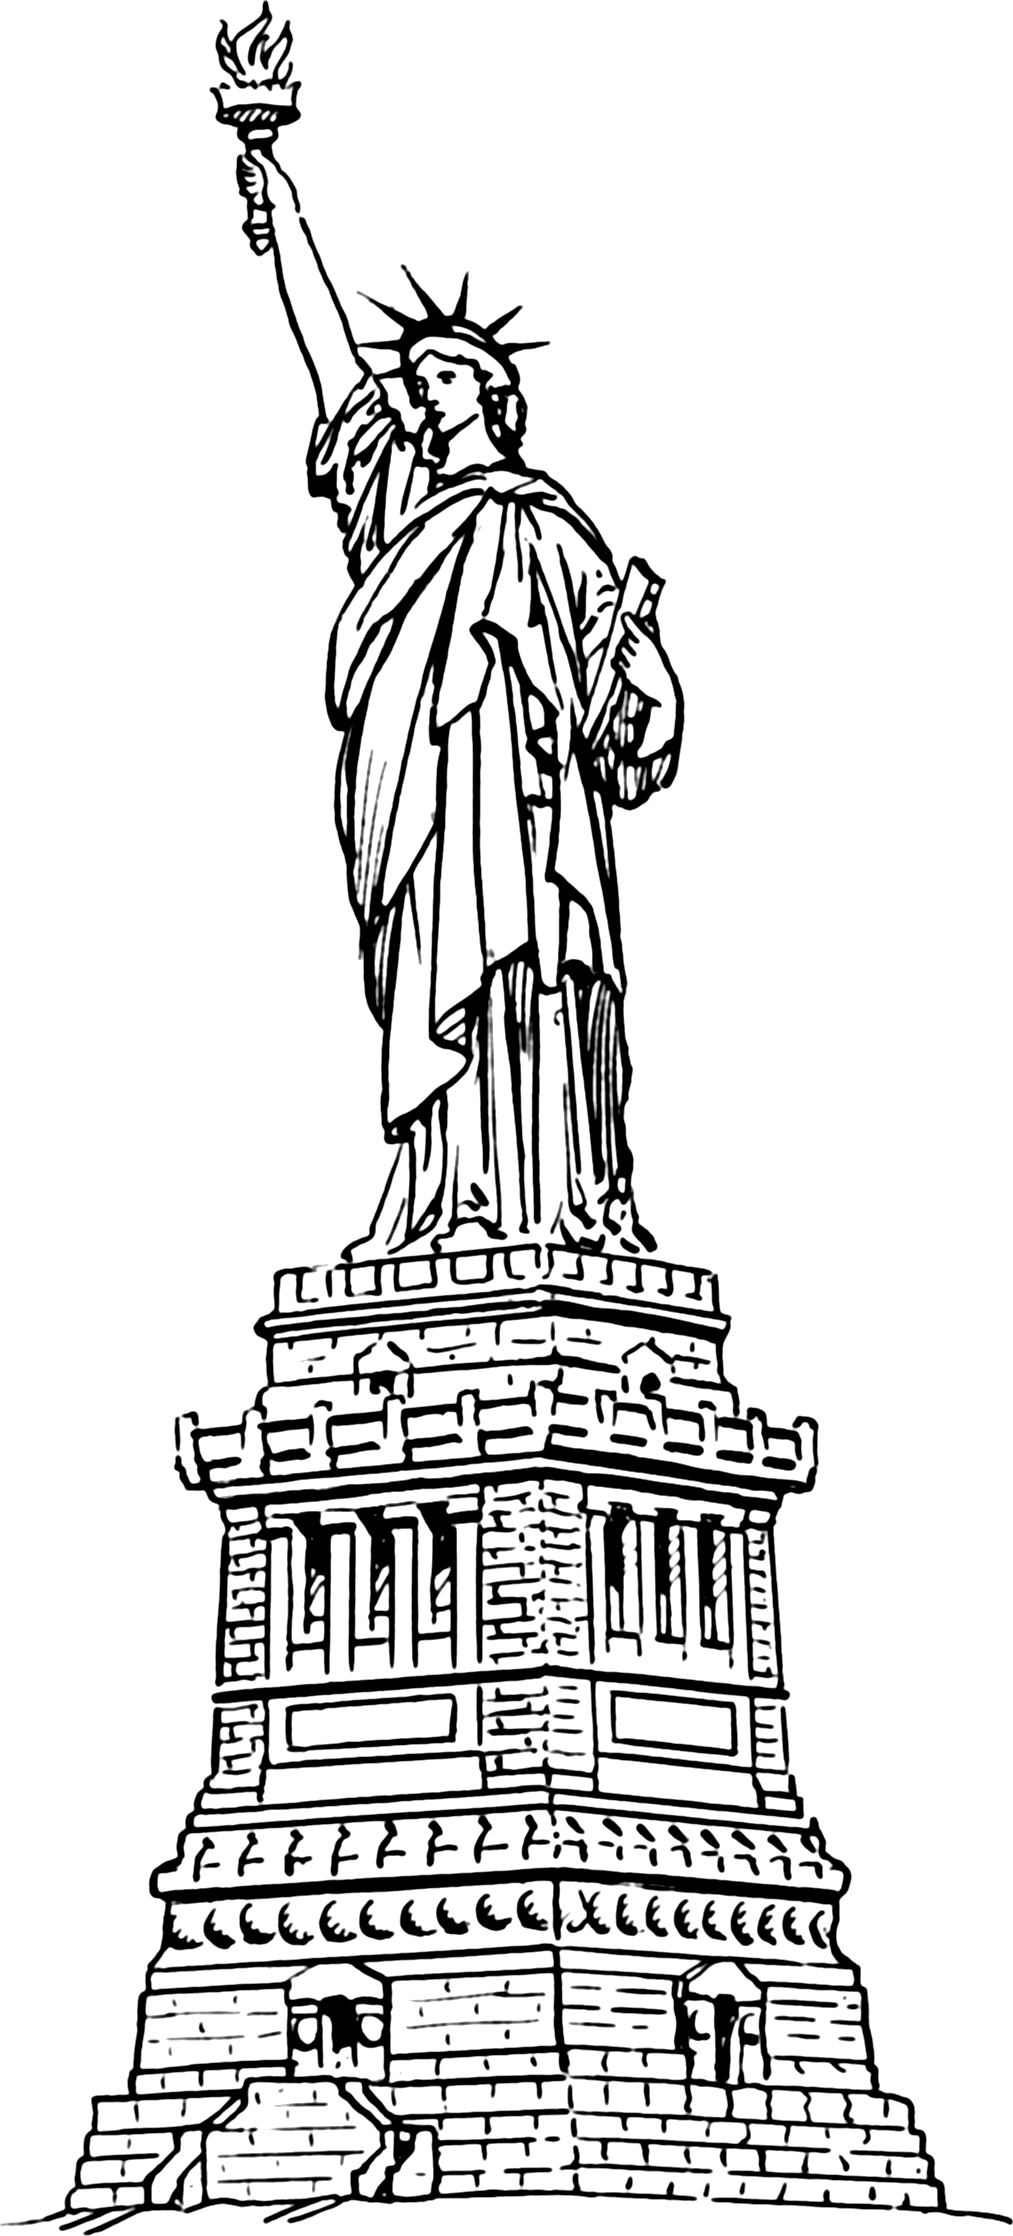 0a9028c3234545492a11c576141a8 - Clipart Statue Of Liberty